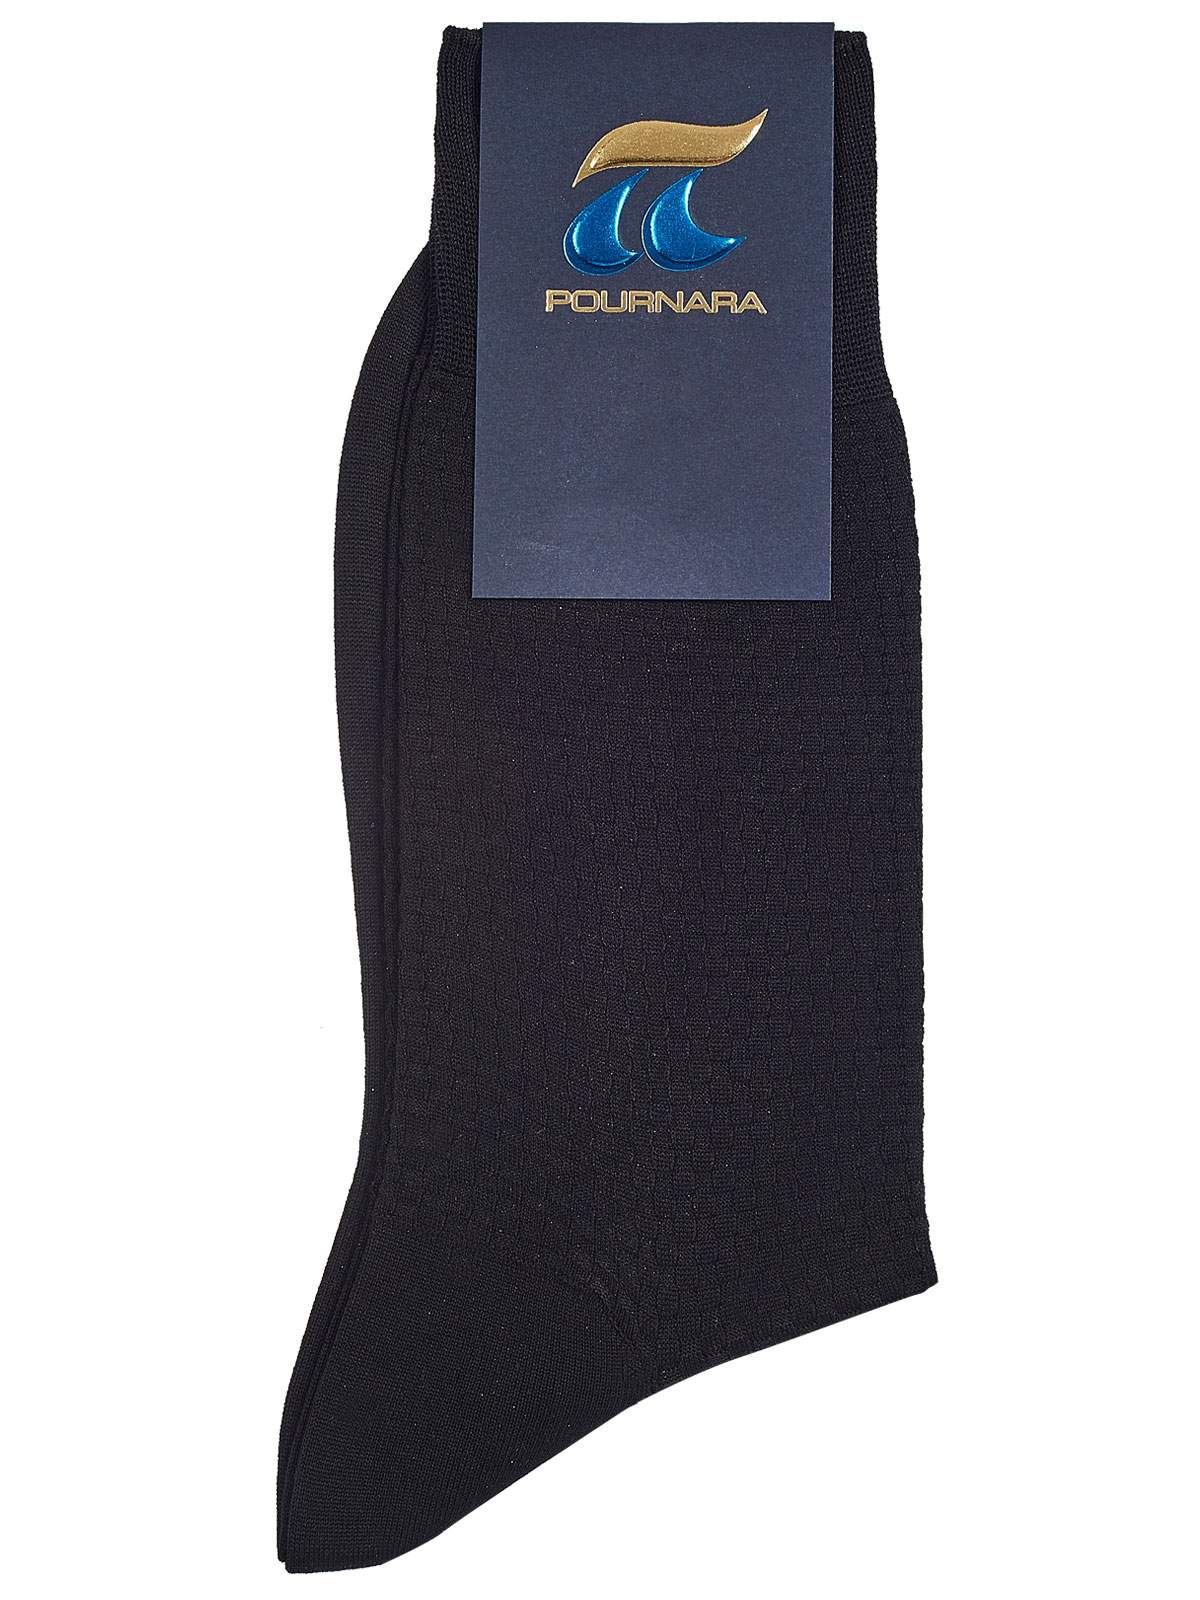 Ανδρική μαύρη κάλτσα Πουρνάρα